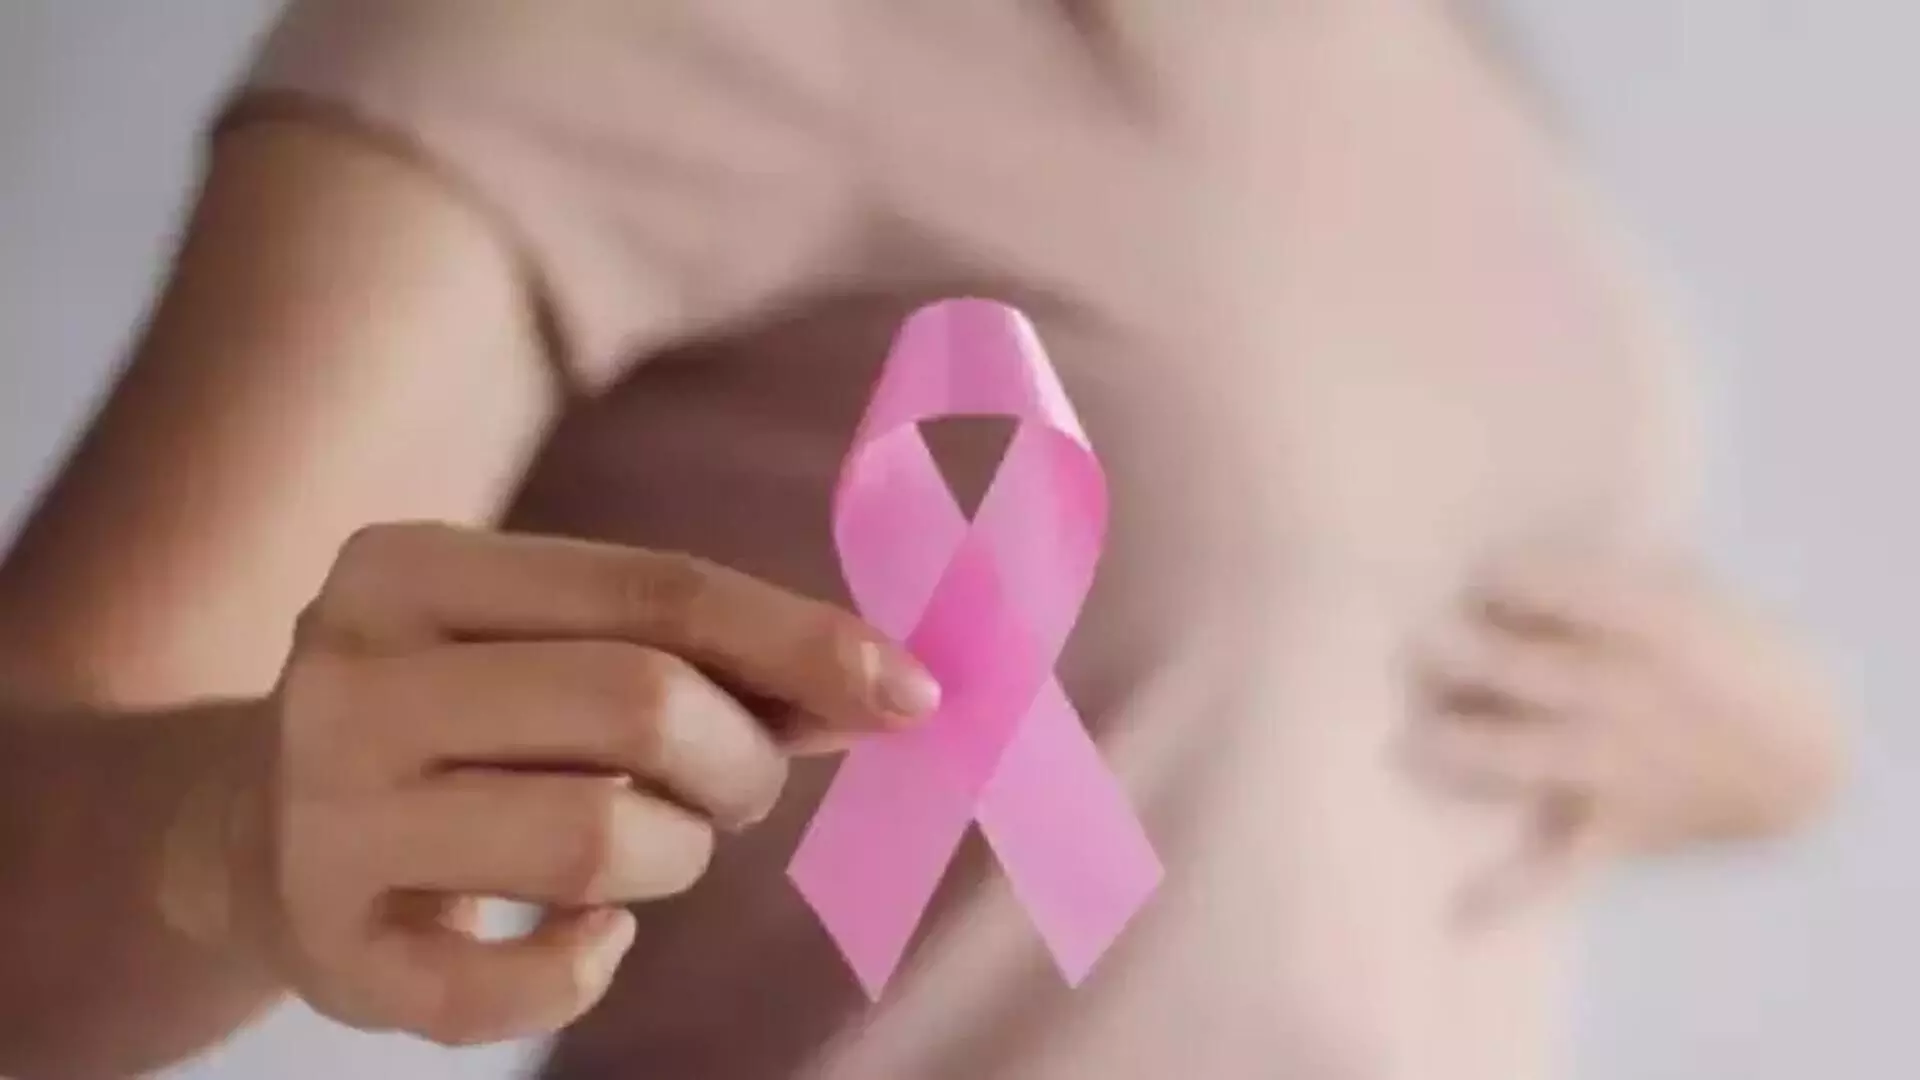 तमिलनाडु, तेलंगाना, कर्नाटक, दिल्ली में स्तन कैंसर का बोझ अधिक- आईसीएमआर अध्ययन